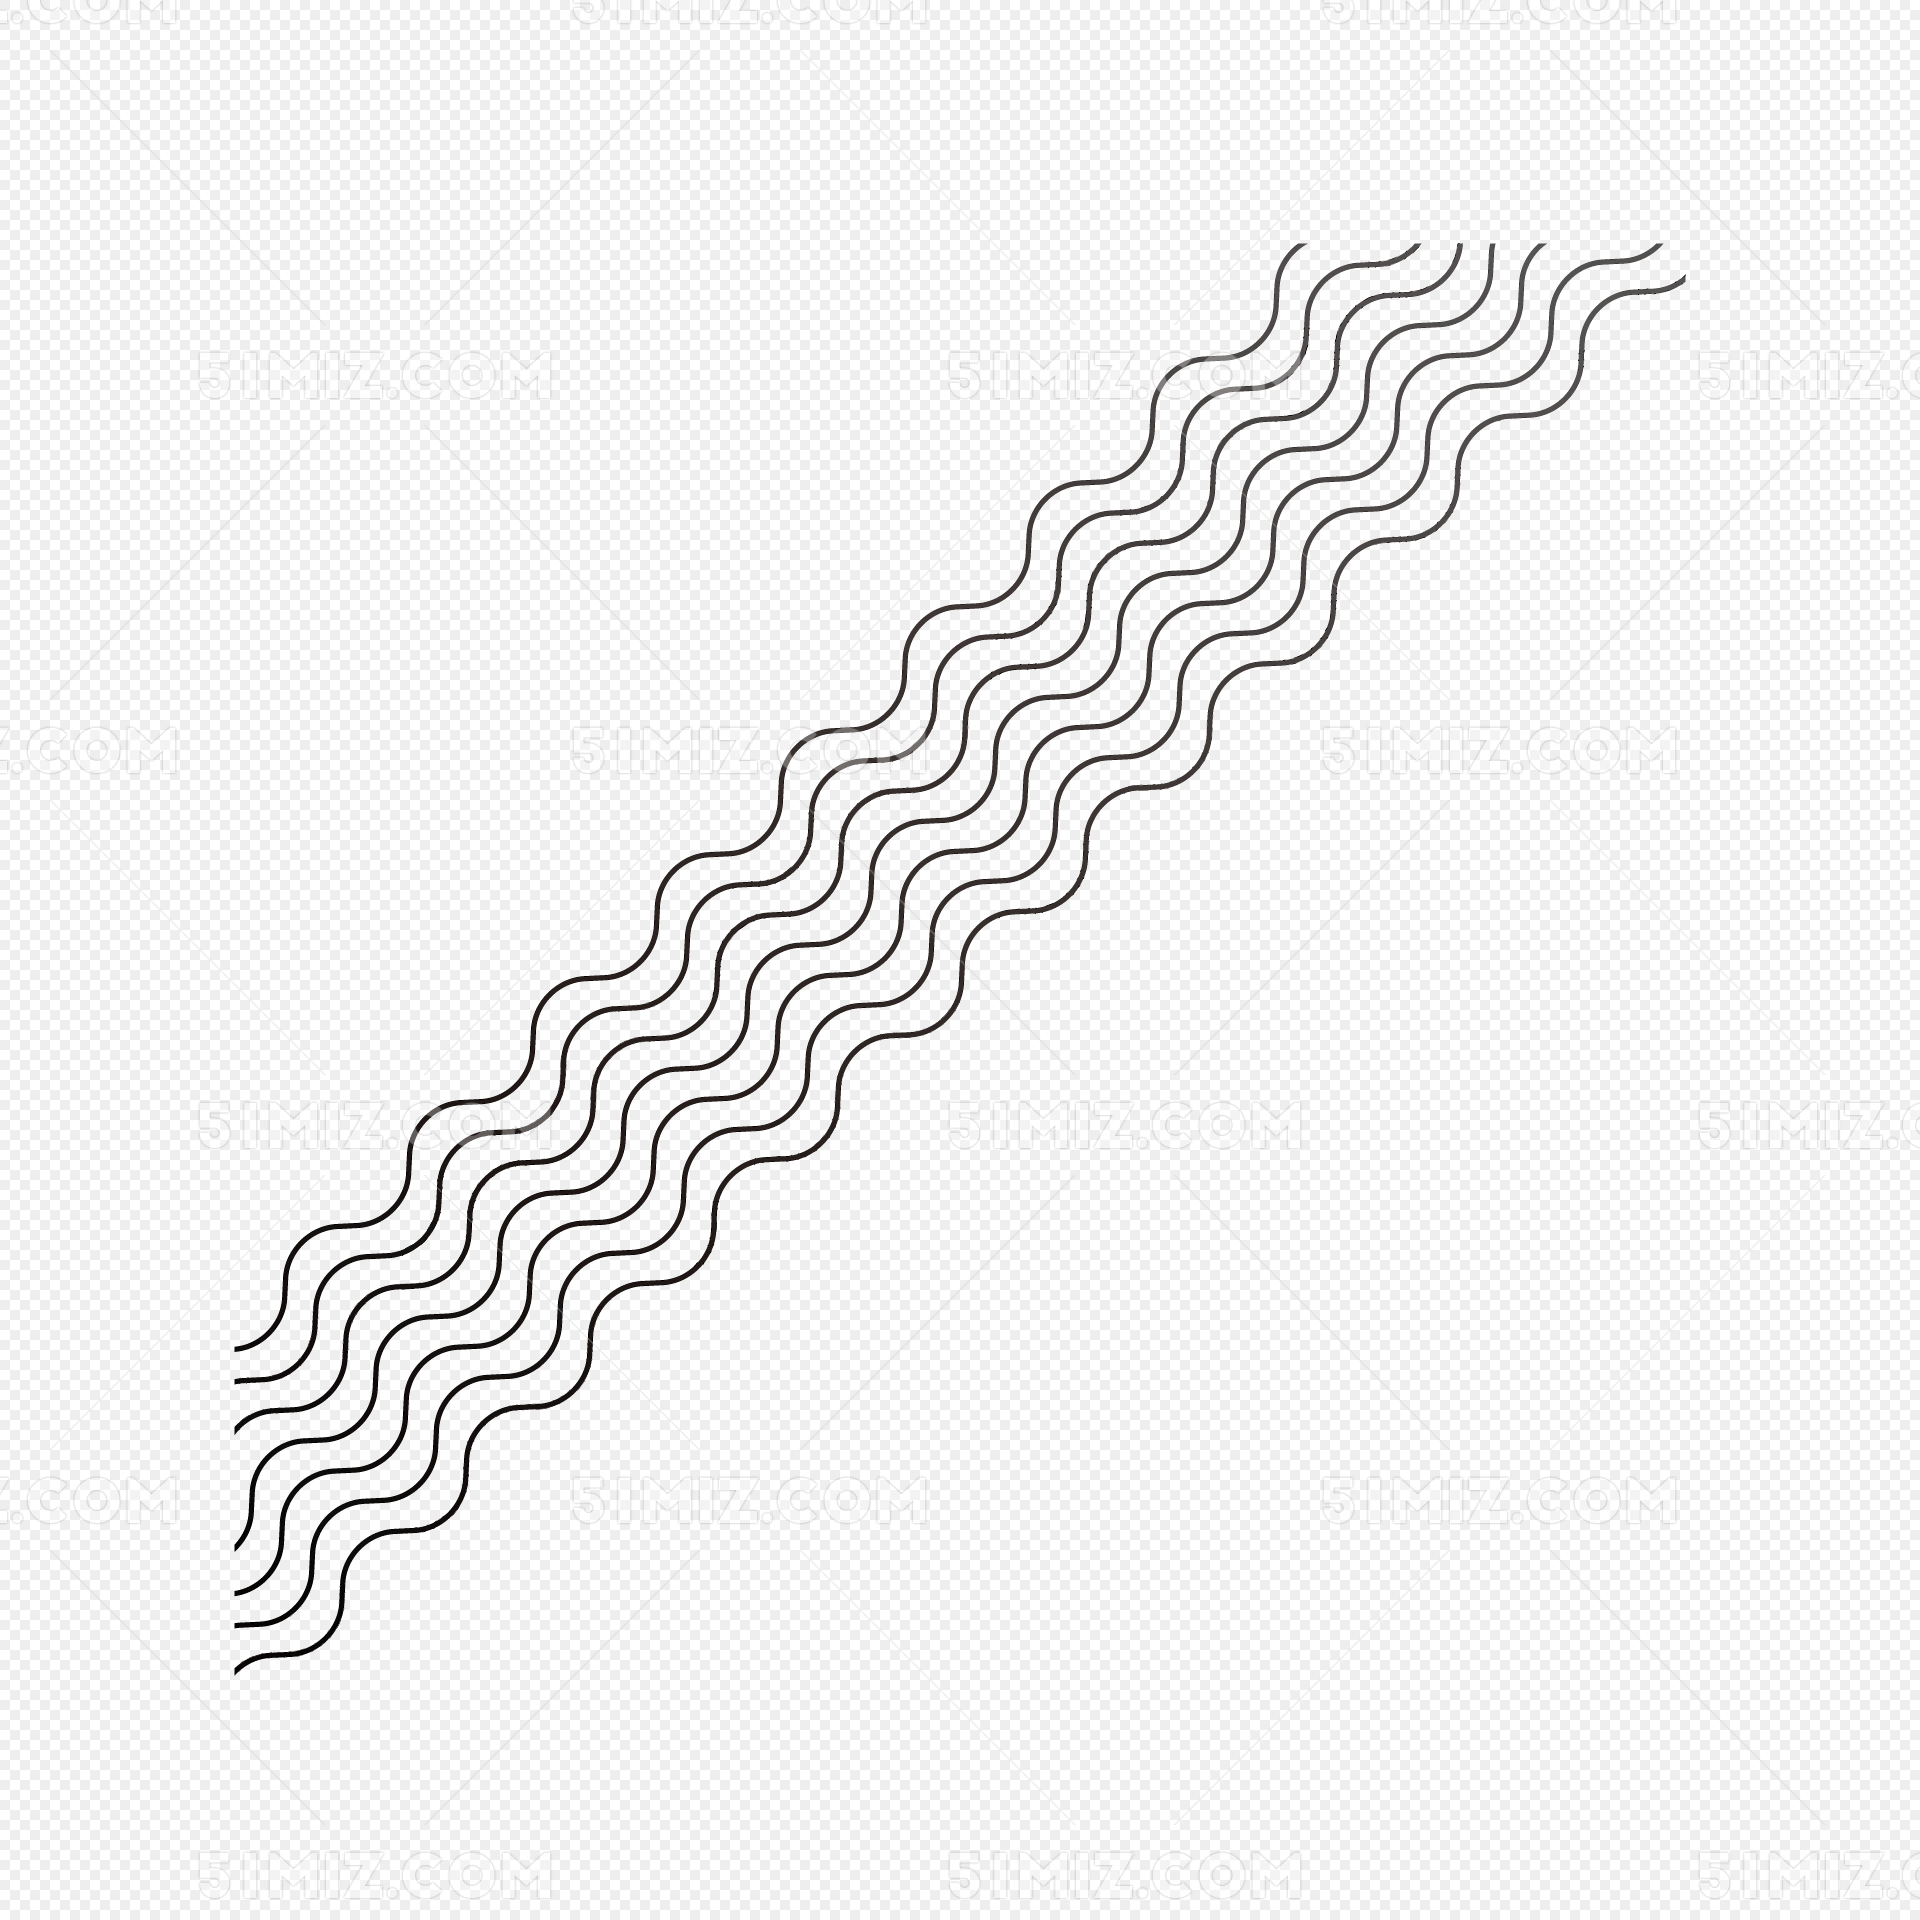 【21】3分钟教你用AI绘制波浪线、螺旋线及爱心形状